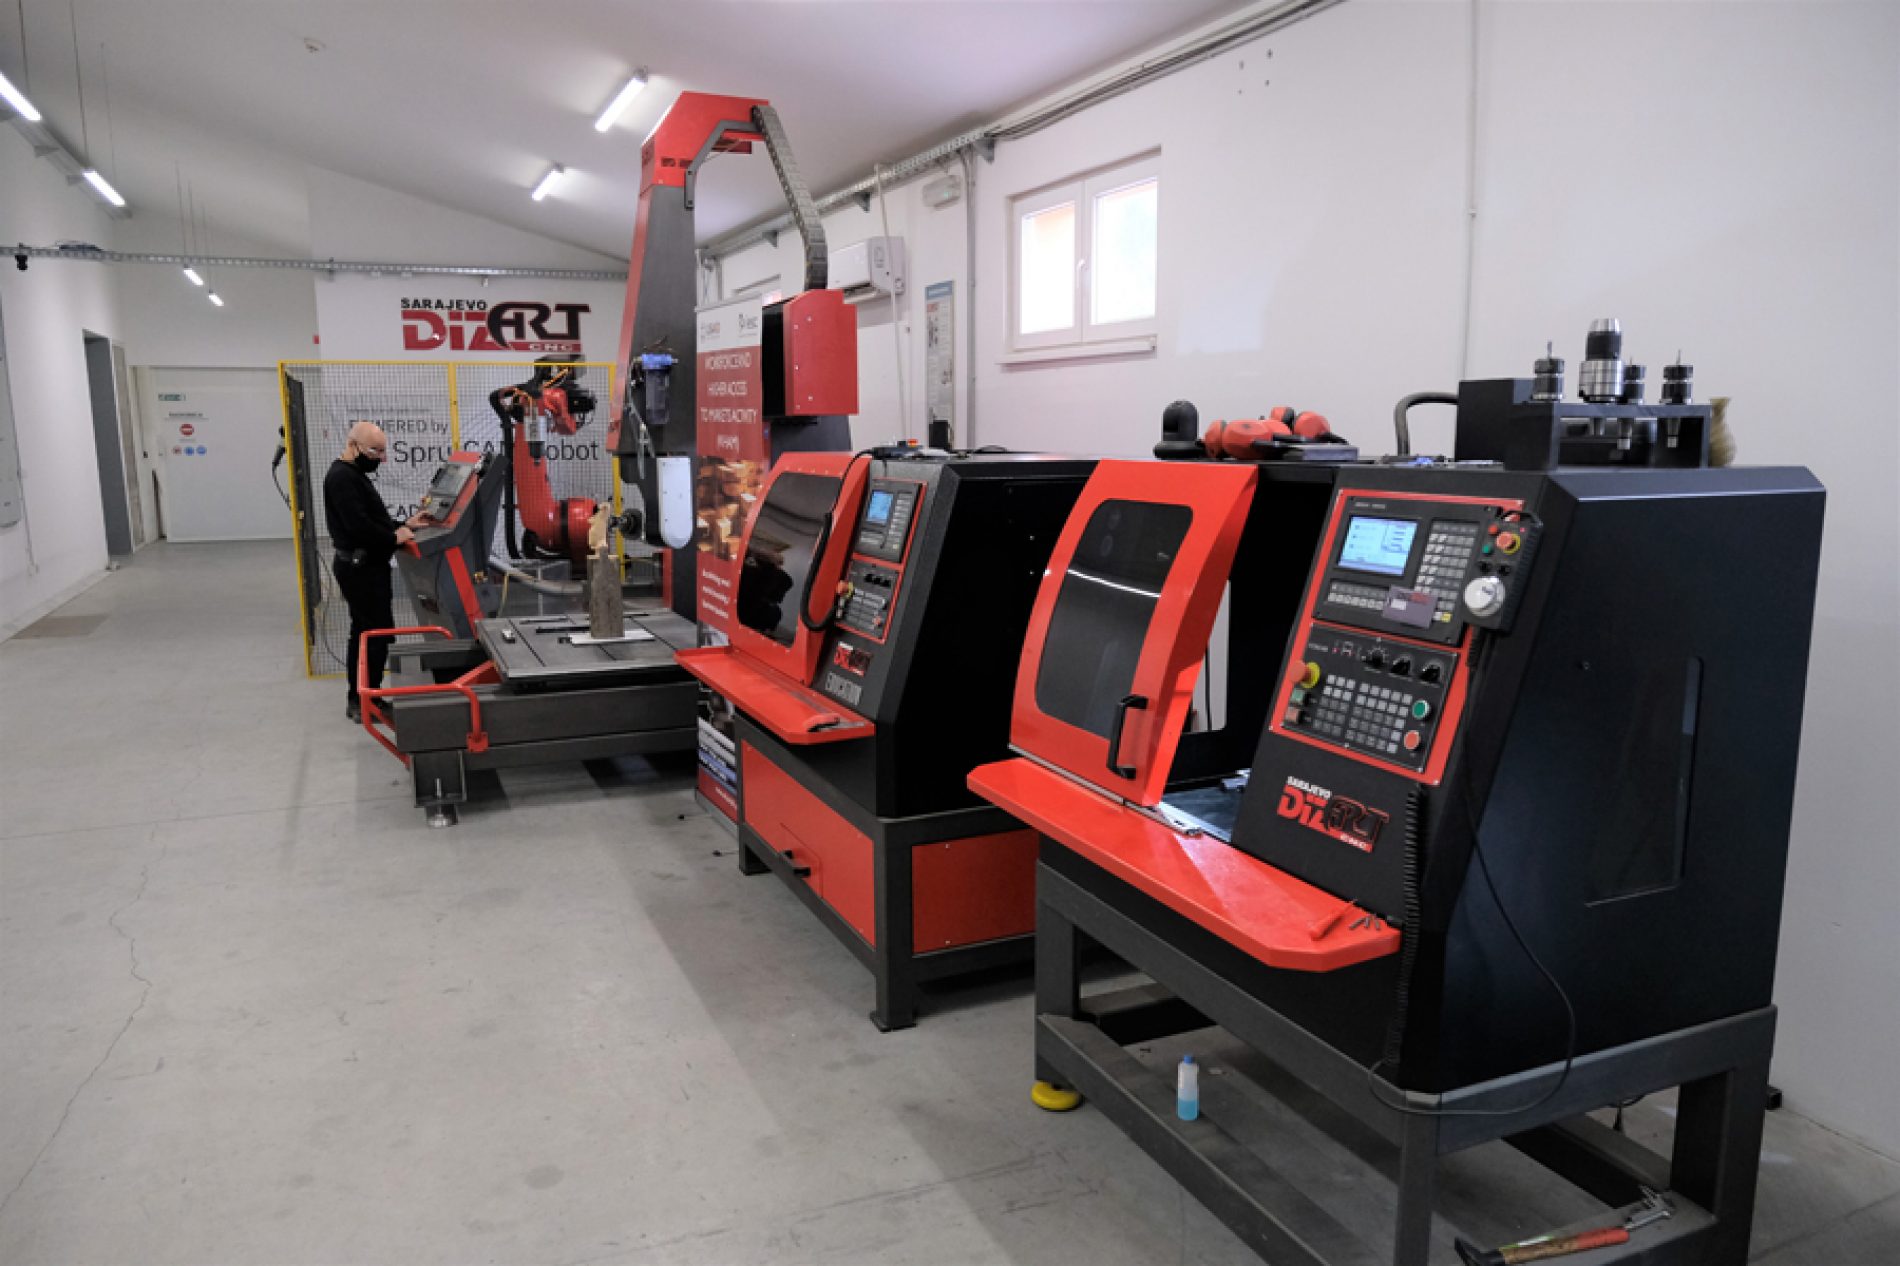 Firma “Dizart” povećala ponudu: U Centru za prekvalifikaciju i obuku napravljena petoosna CNC mašina